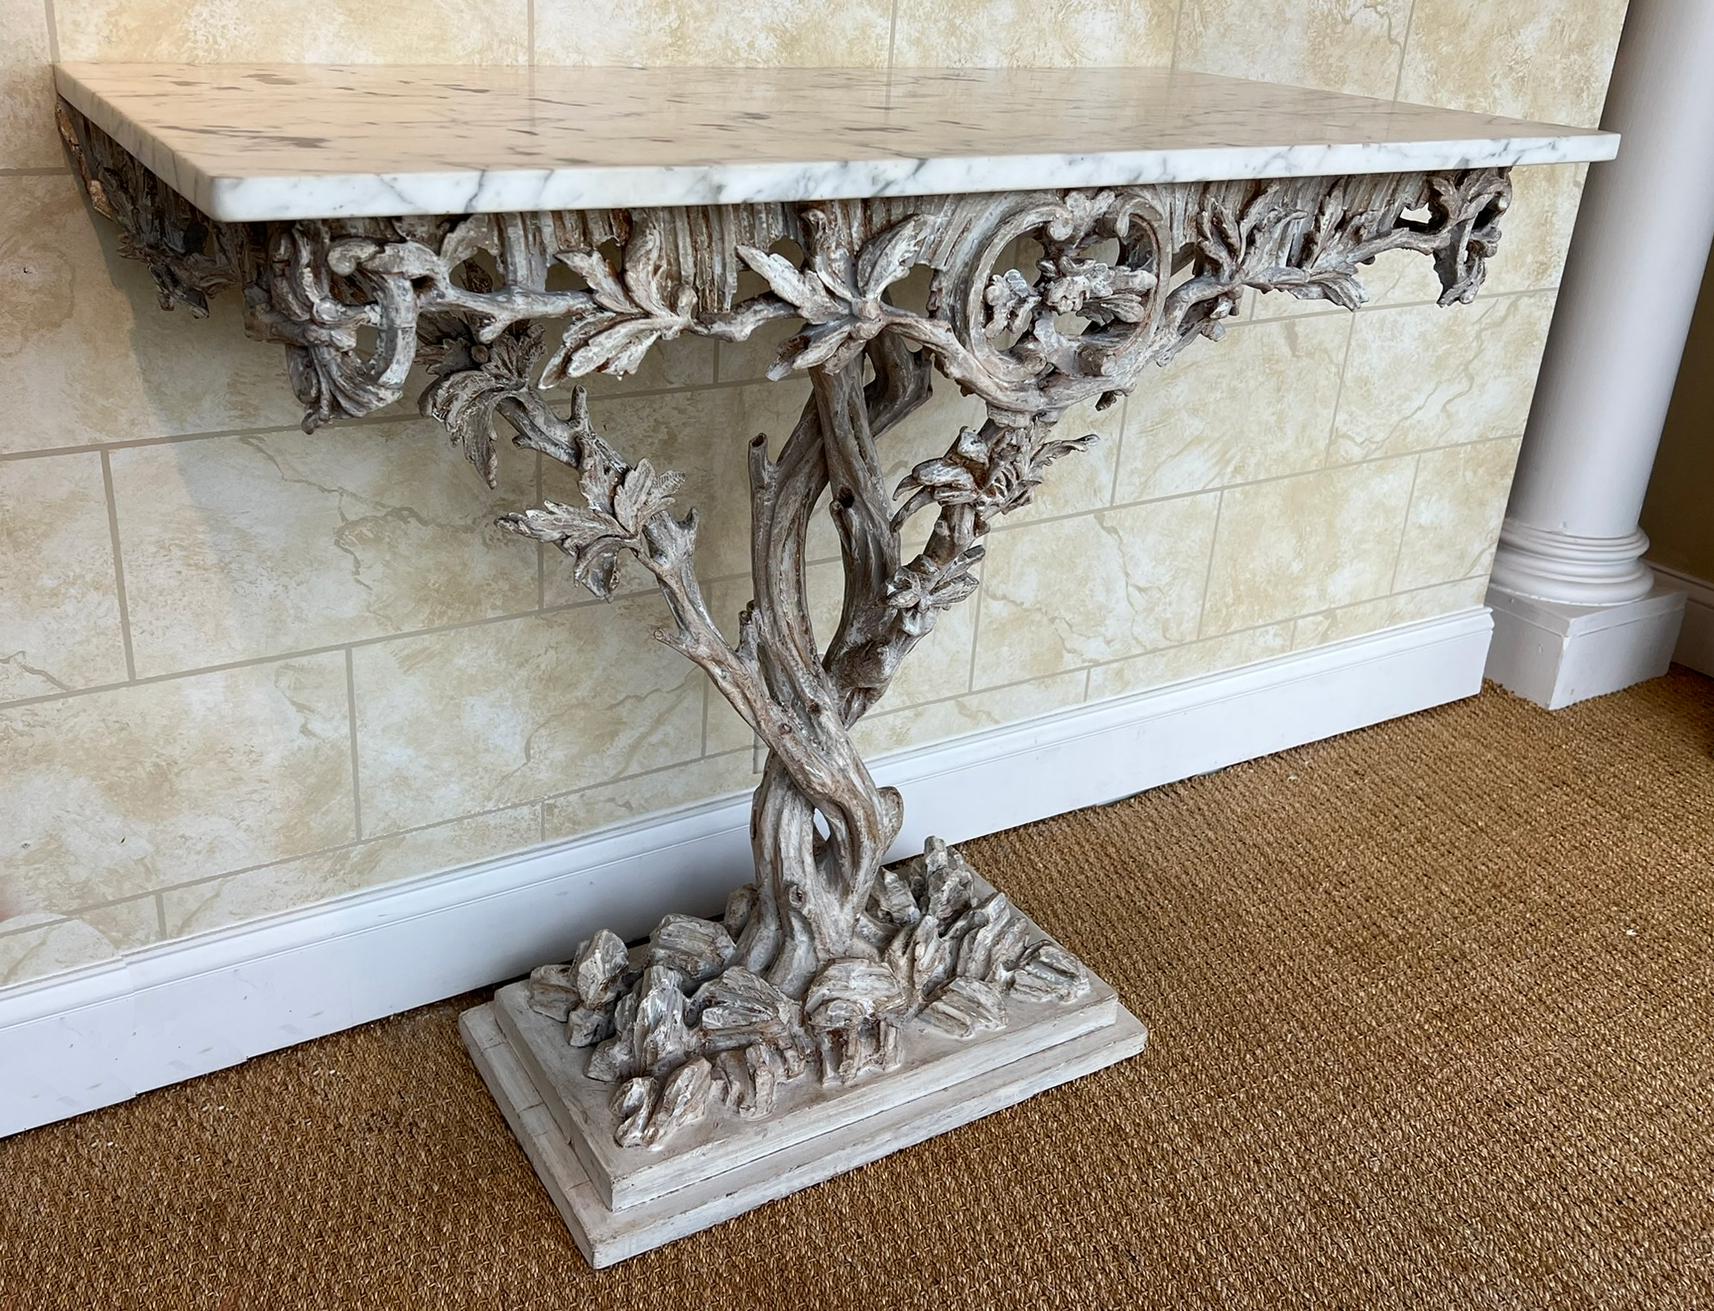 Console arboricole de style Fantasy Furniture, avec un plateau rectangulaire en marbre de Carrare, sur une base en bois sculpté à la main, avec une finition peinte, montrant une usure naturelle ; la base de la table est façonnée comme des branches